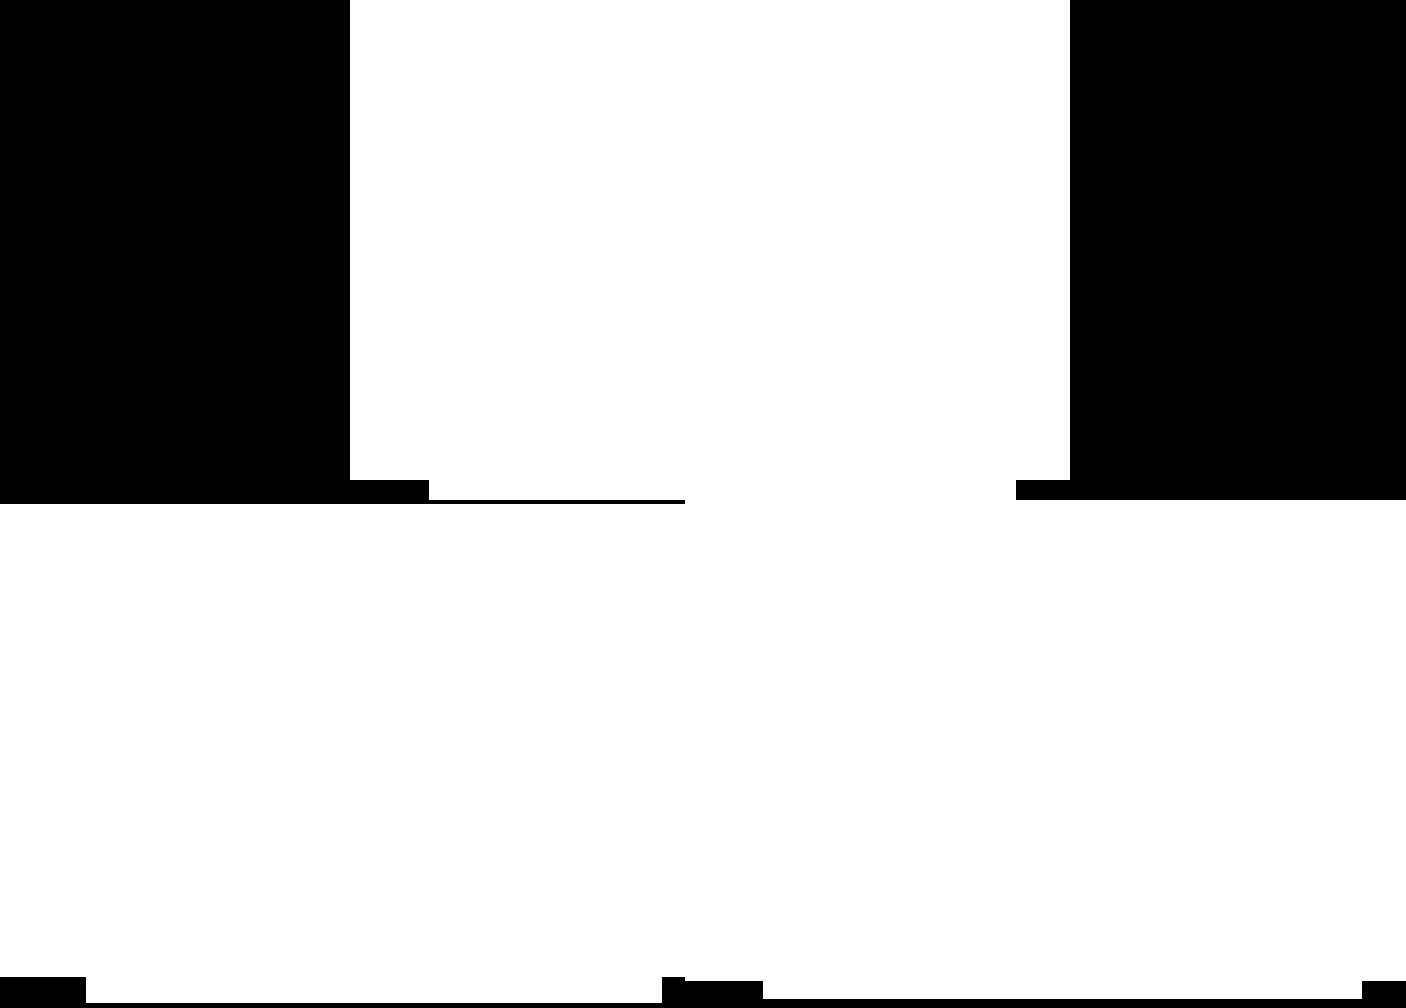 8. ábra: A Lágymányoson 2 méteres magasságban mért napi átlagos hőmérsékleti értékek (a), a területen mért napi csapadékösszeg és a modellezett talajnedvességi értékek vegyes fás (b) és füves(c)